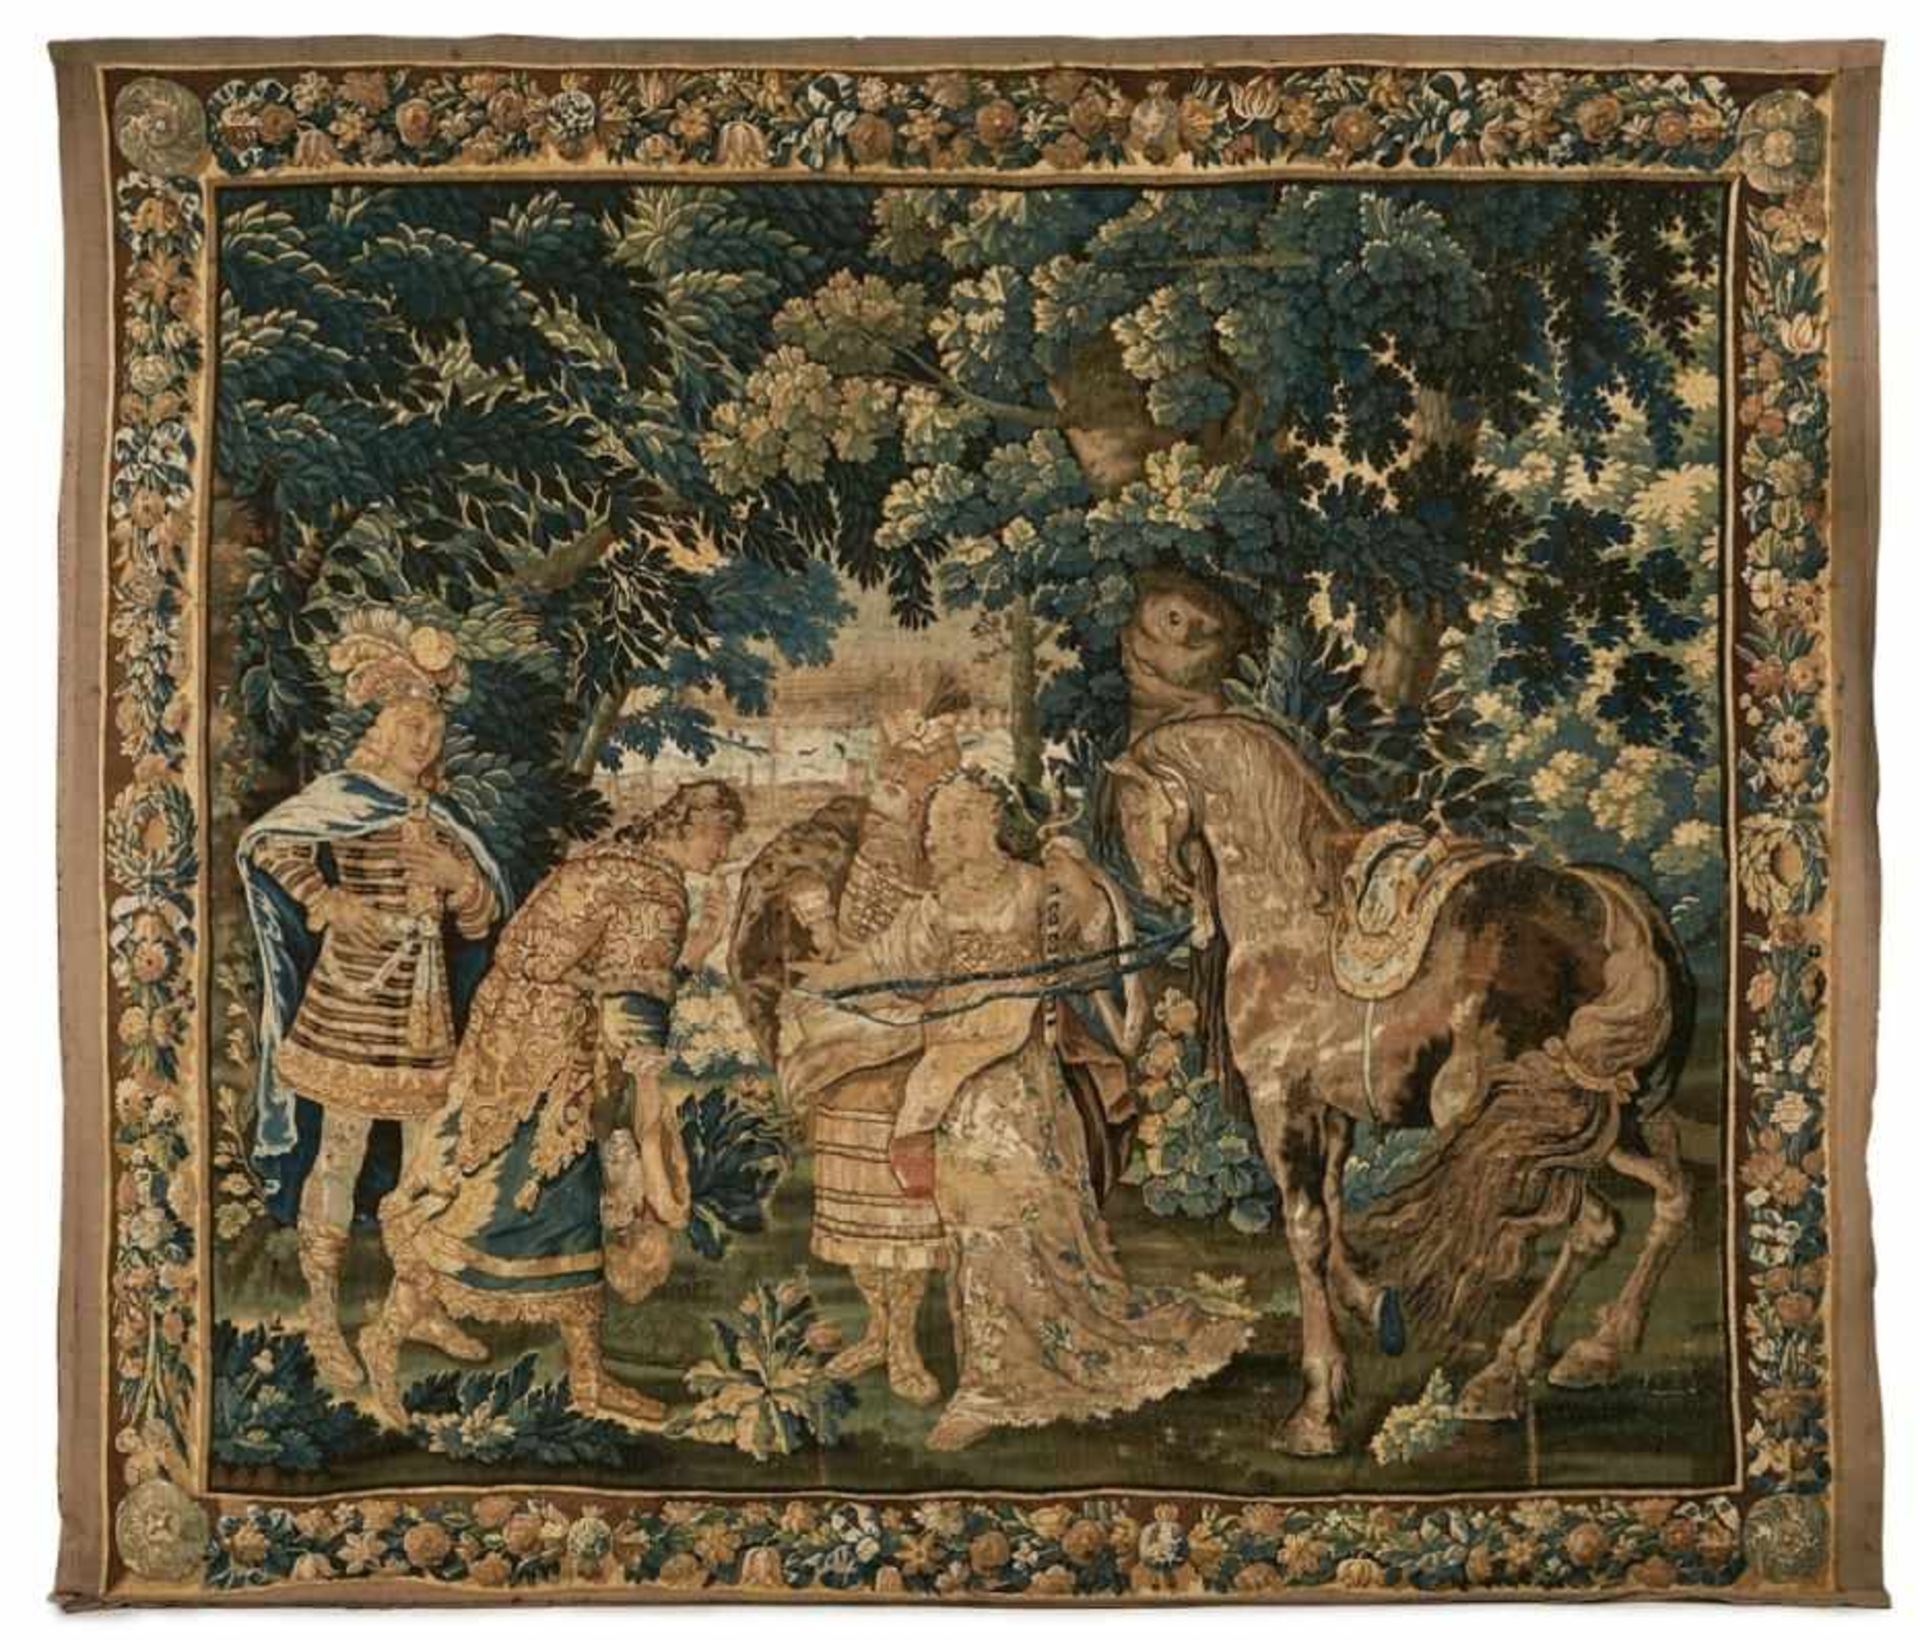 Tapisserie, flämisch um 1700.Mythologische Szene: Orientalischer König bei der Brautübergabe in